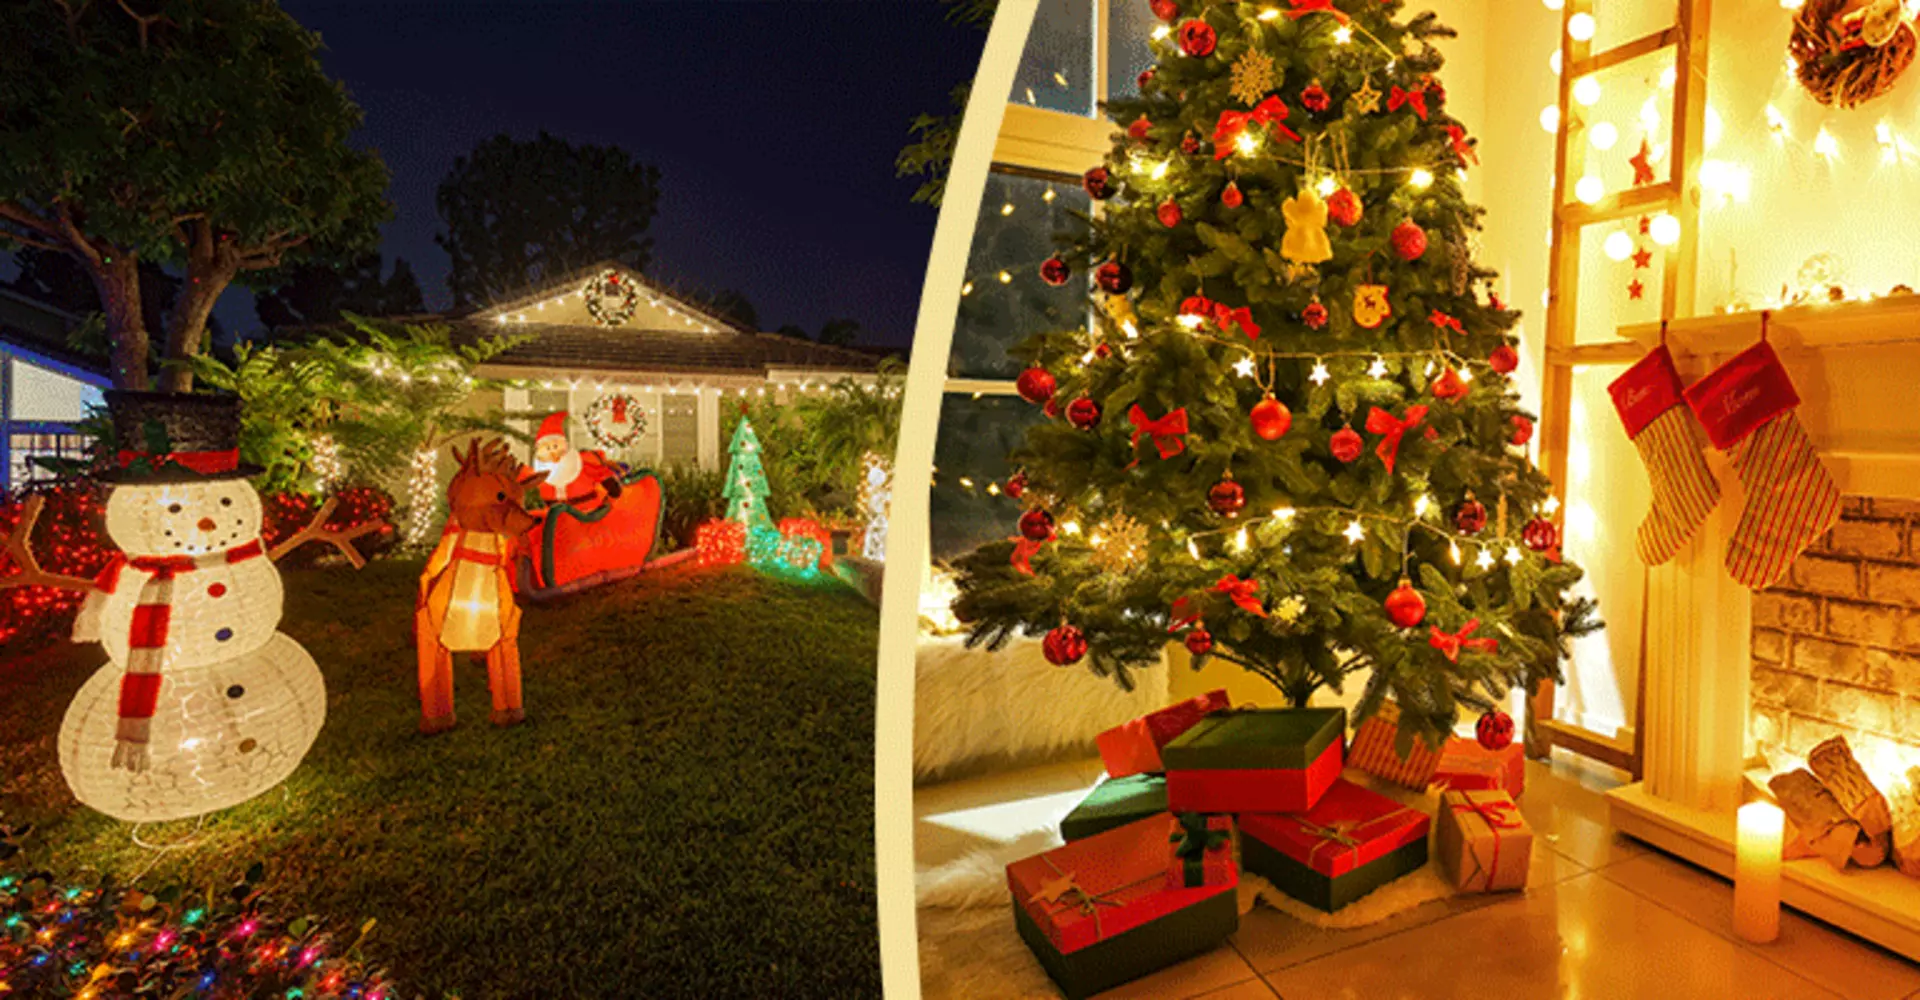 Traditionell bis modern, warmweiß bis bunt blinkend, für innen und außen - Weihnachtsbeleuchtung gibt es in vielen Formen, Farben und Varianten